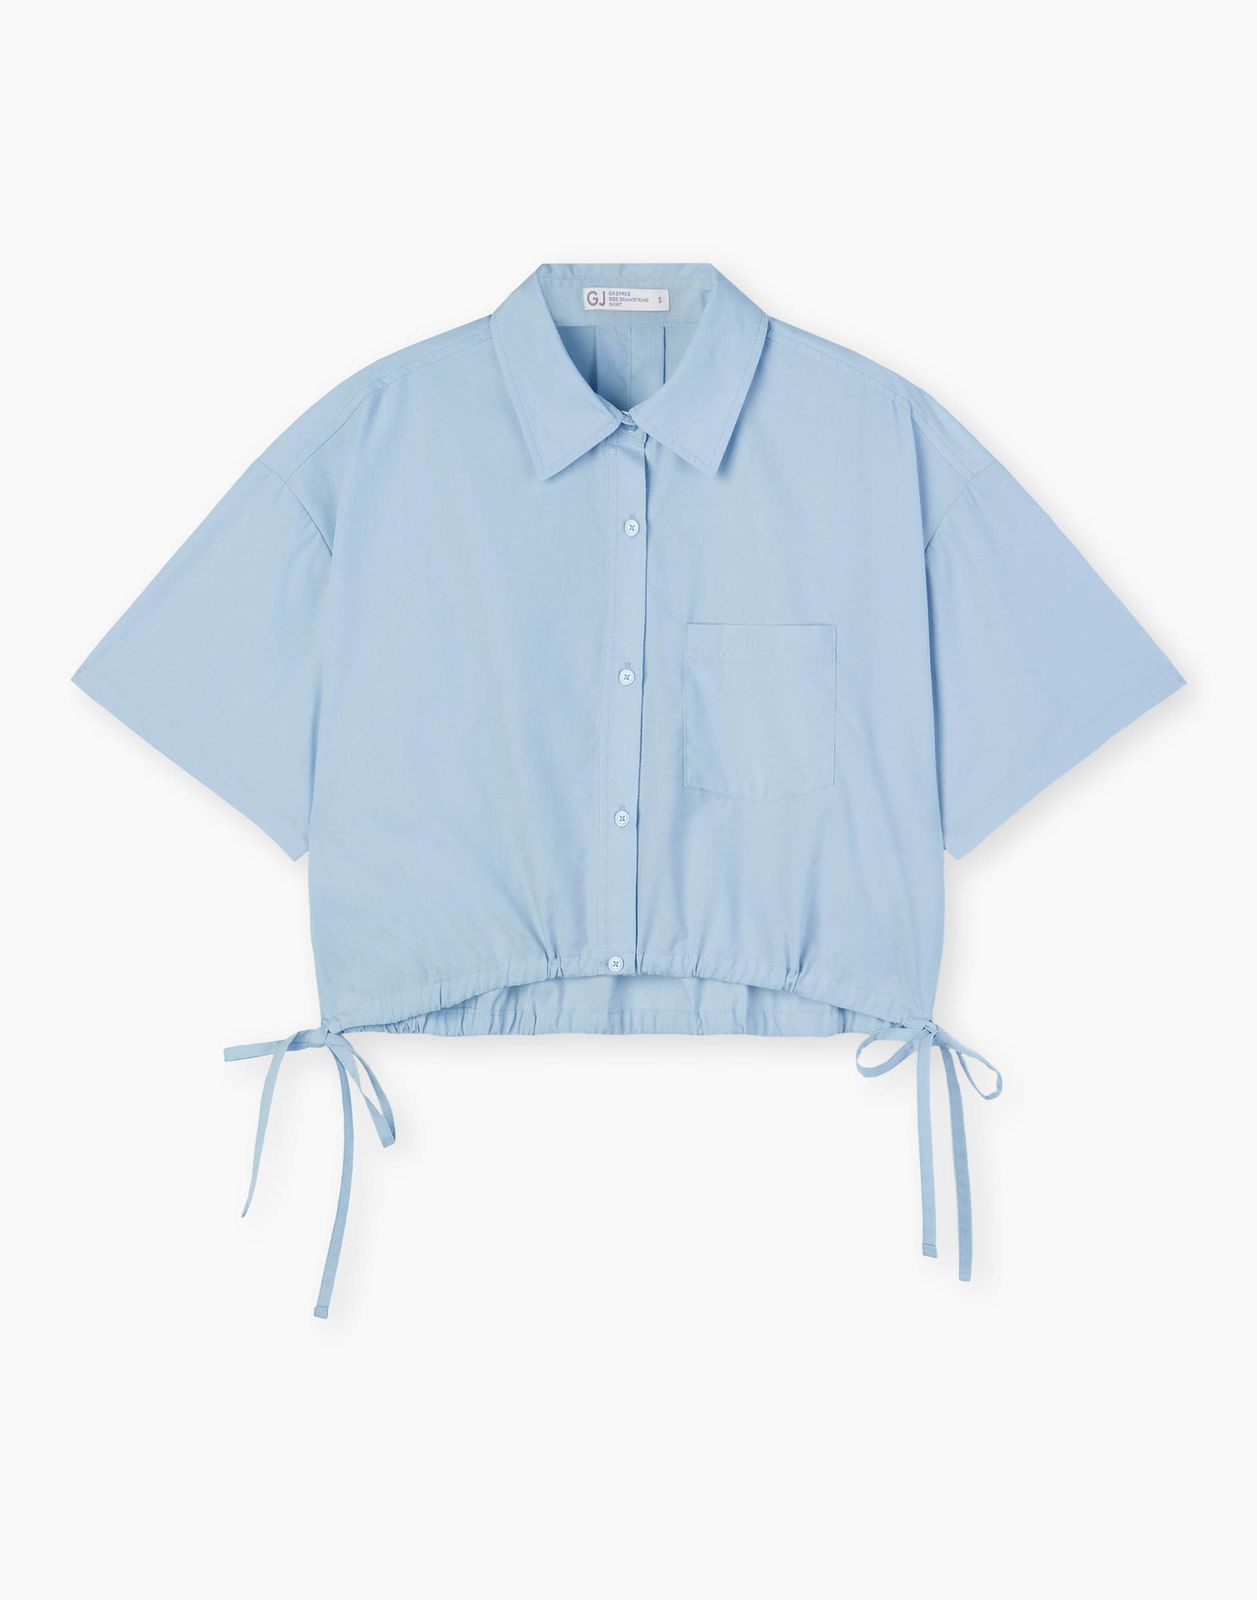 Рубашка женская Gloria Jeans GWT003620 голубой XS/164